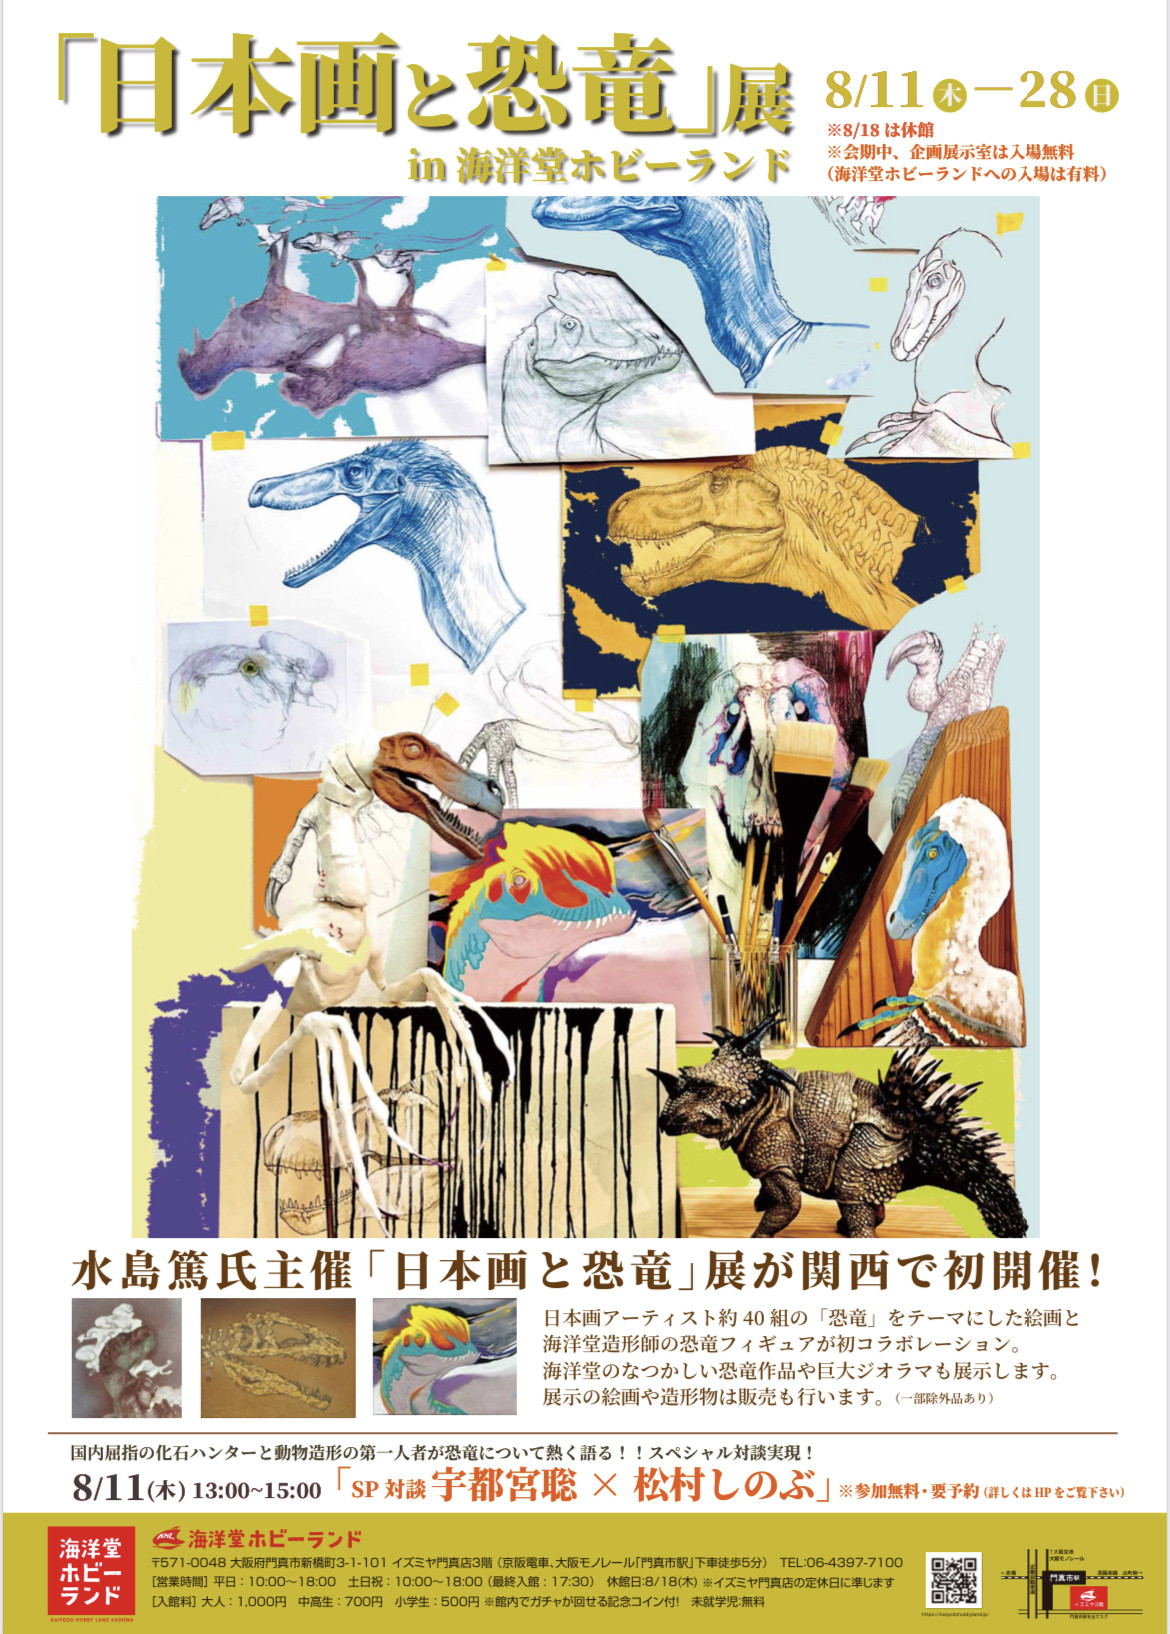 【「日本画と恐竜」展 in 海洋堂ホビーランド】8/11(木)〜28(日)